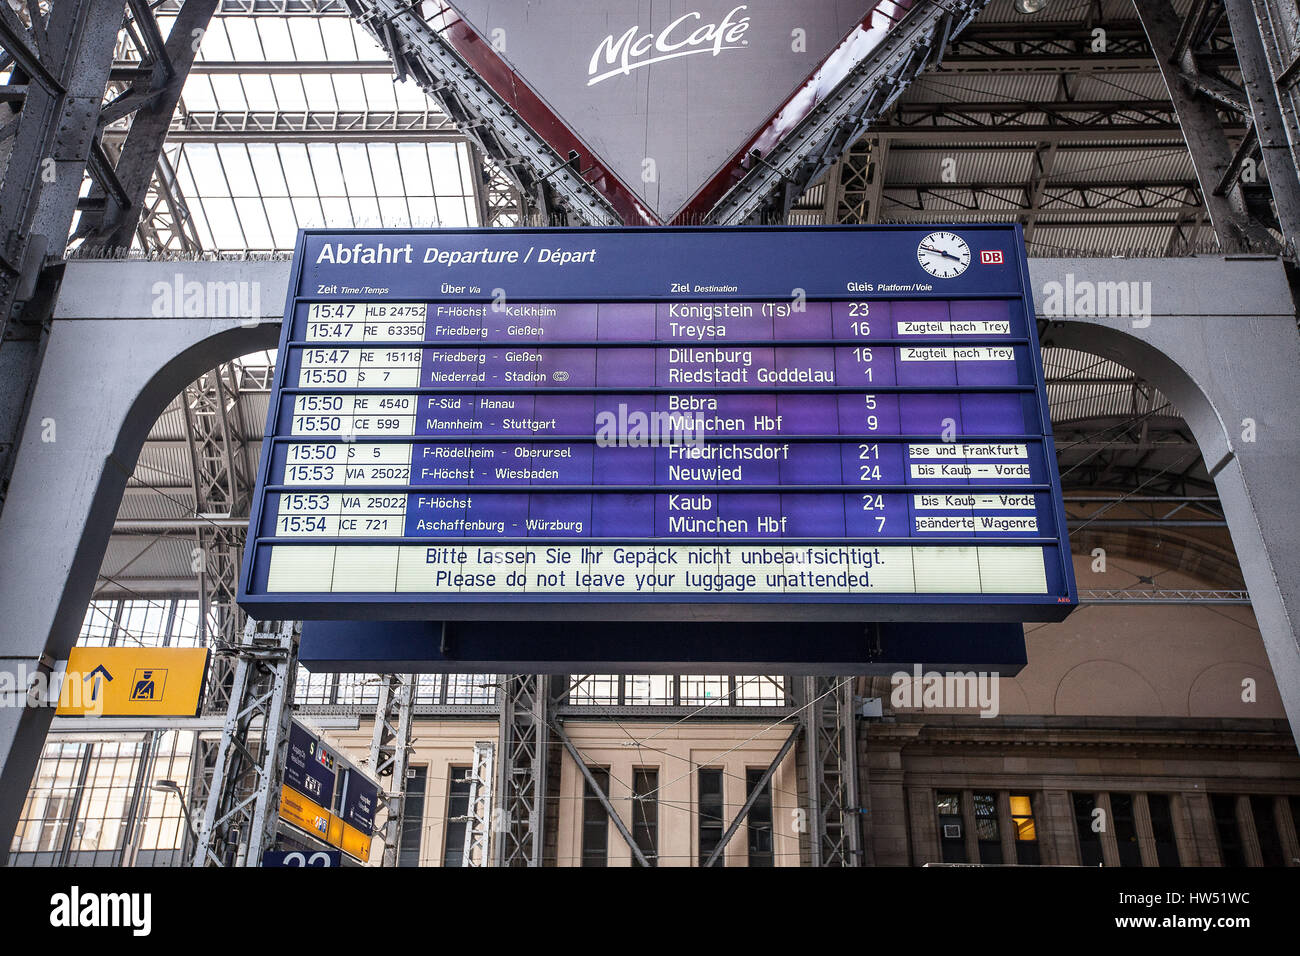 Frankfurt Hauptbahnhof (gare centrale de Francfort) est un des plus fréquentés dans les gares ferroviaires de l'Allemagne avec environ 350 000 passagers par jour, ce qui rend Banque D'Images